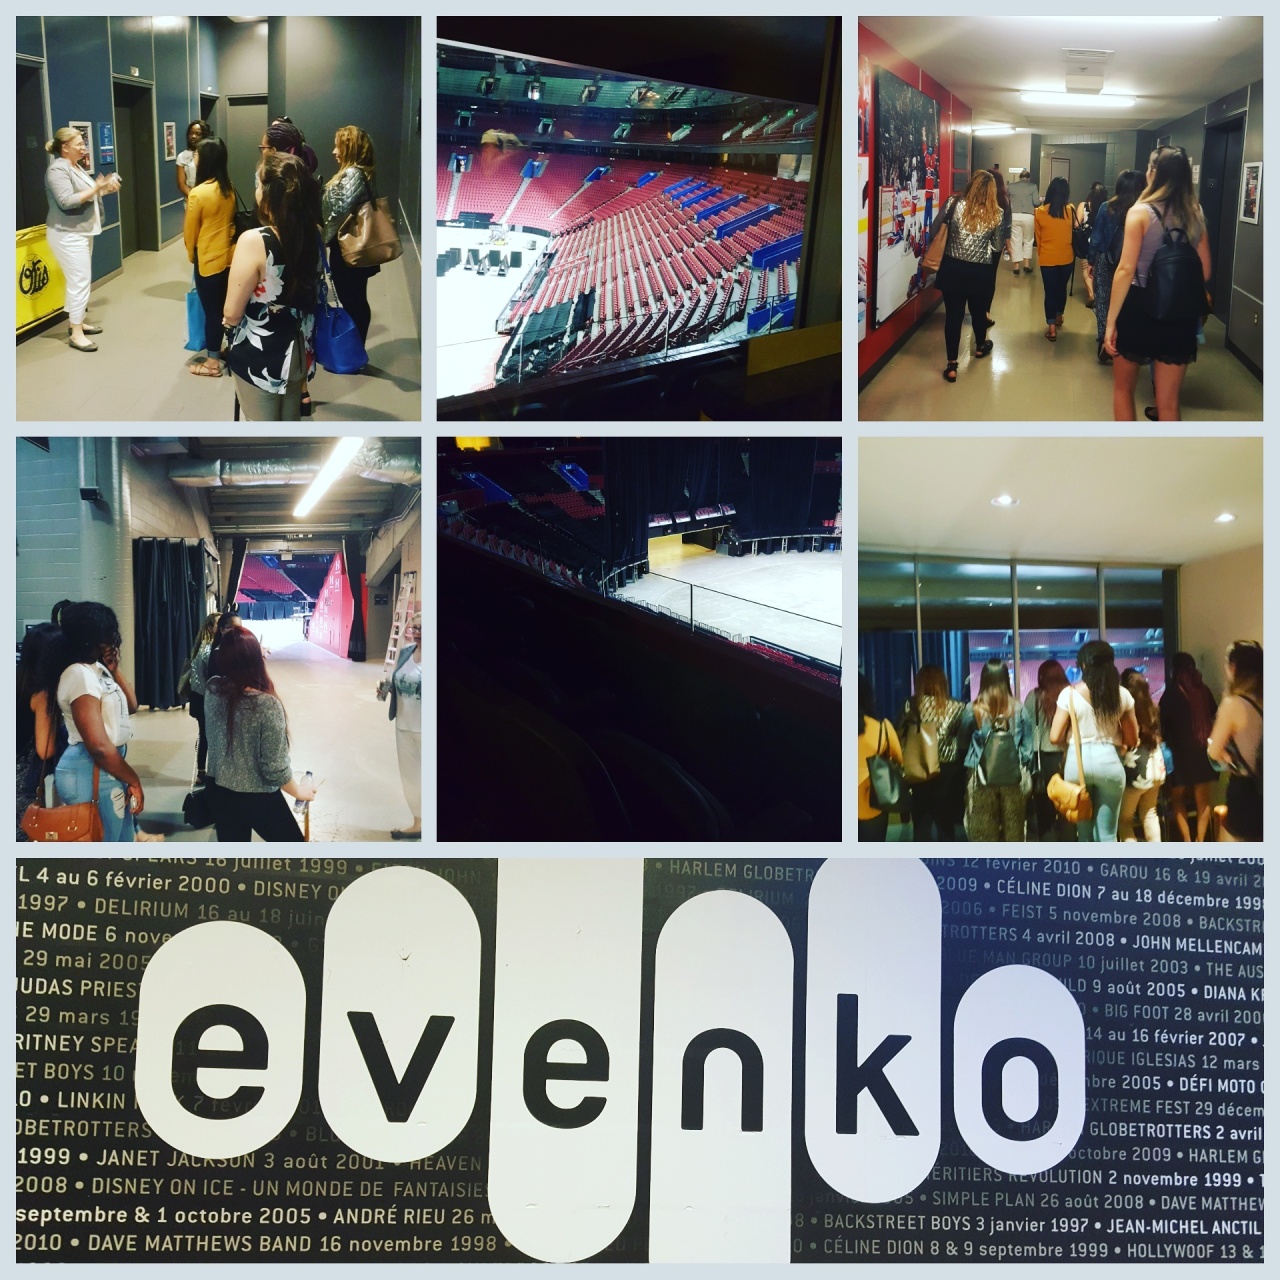 evenko-site-visit